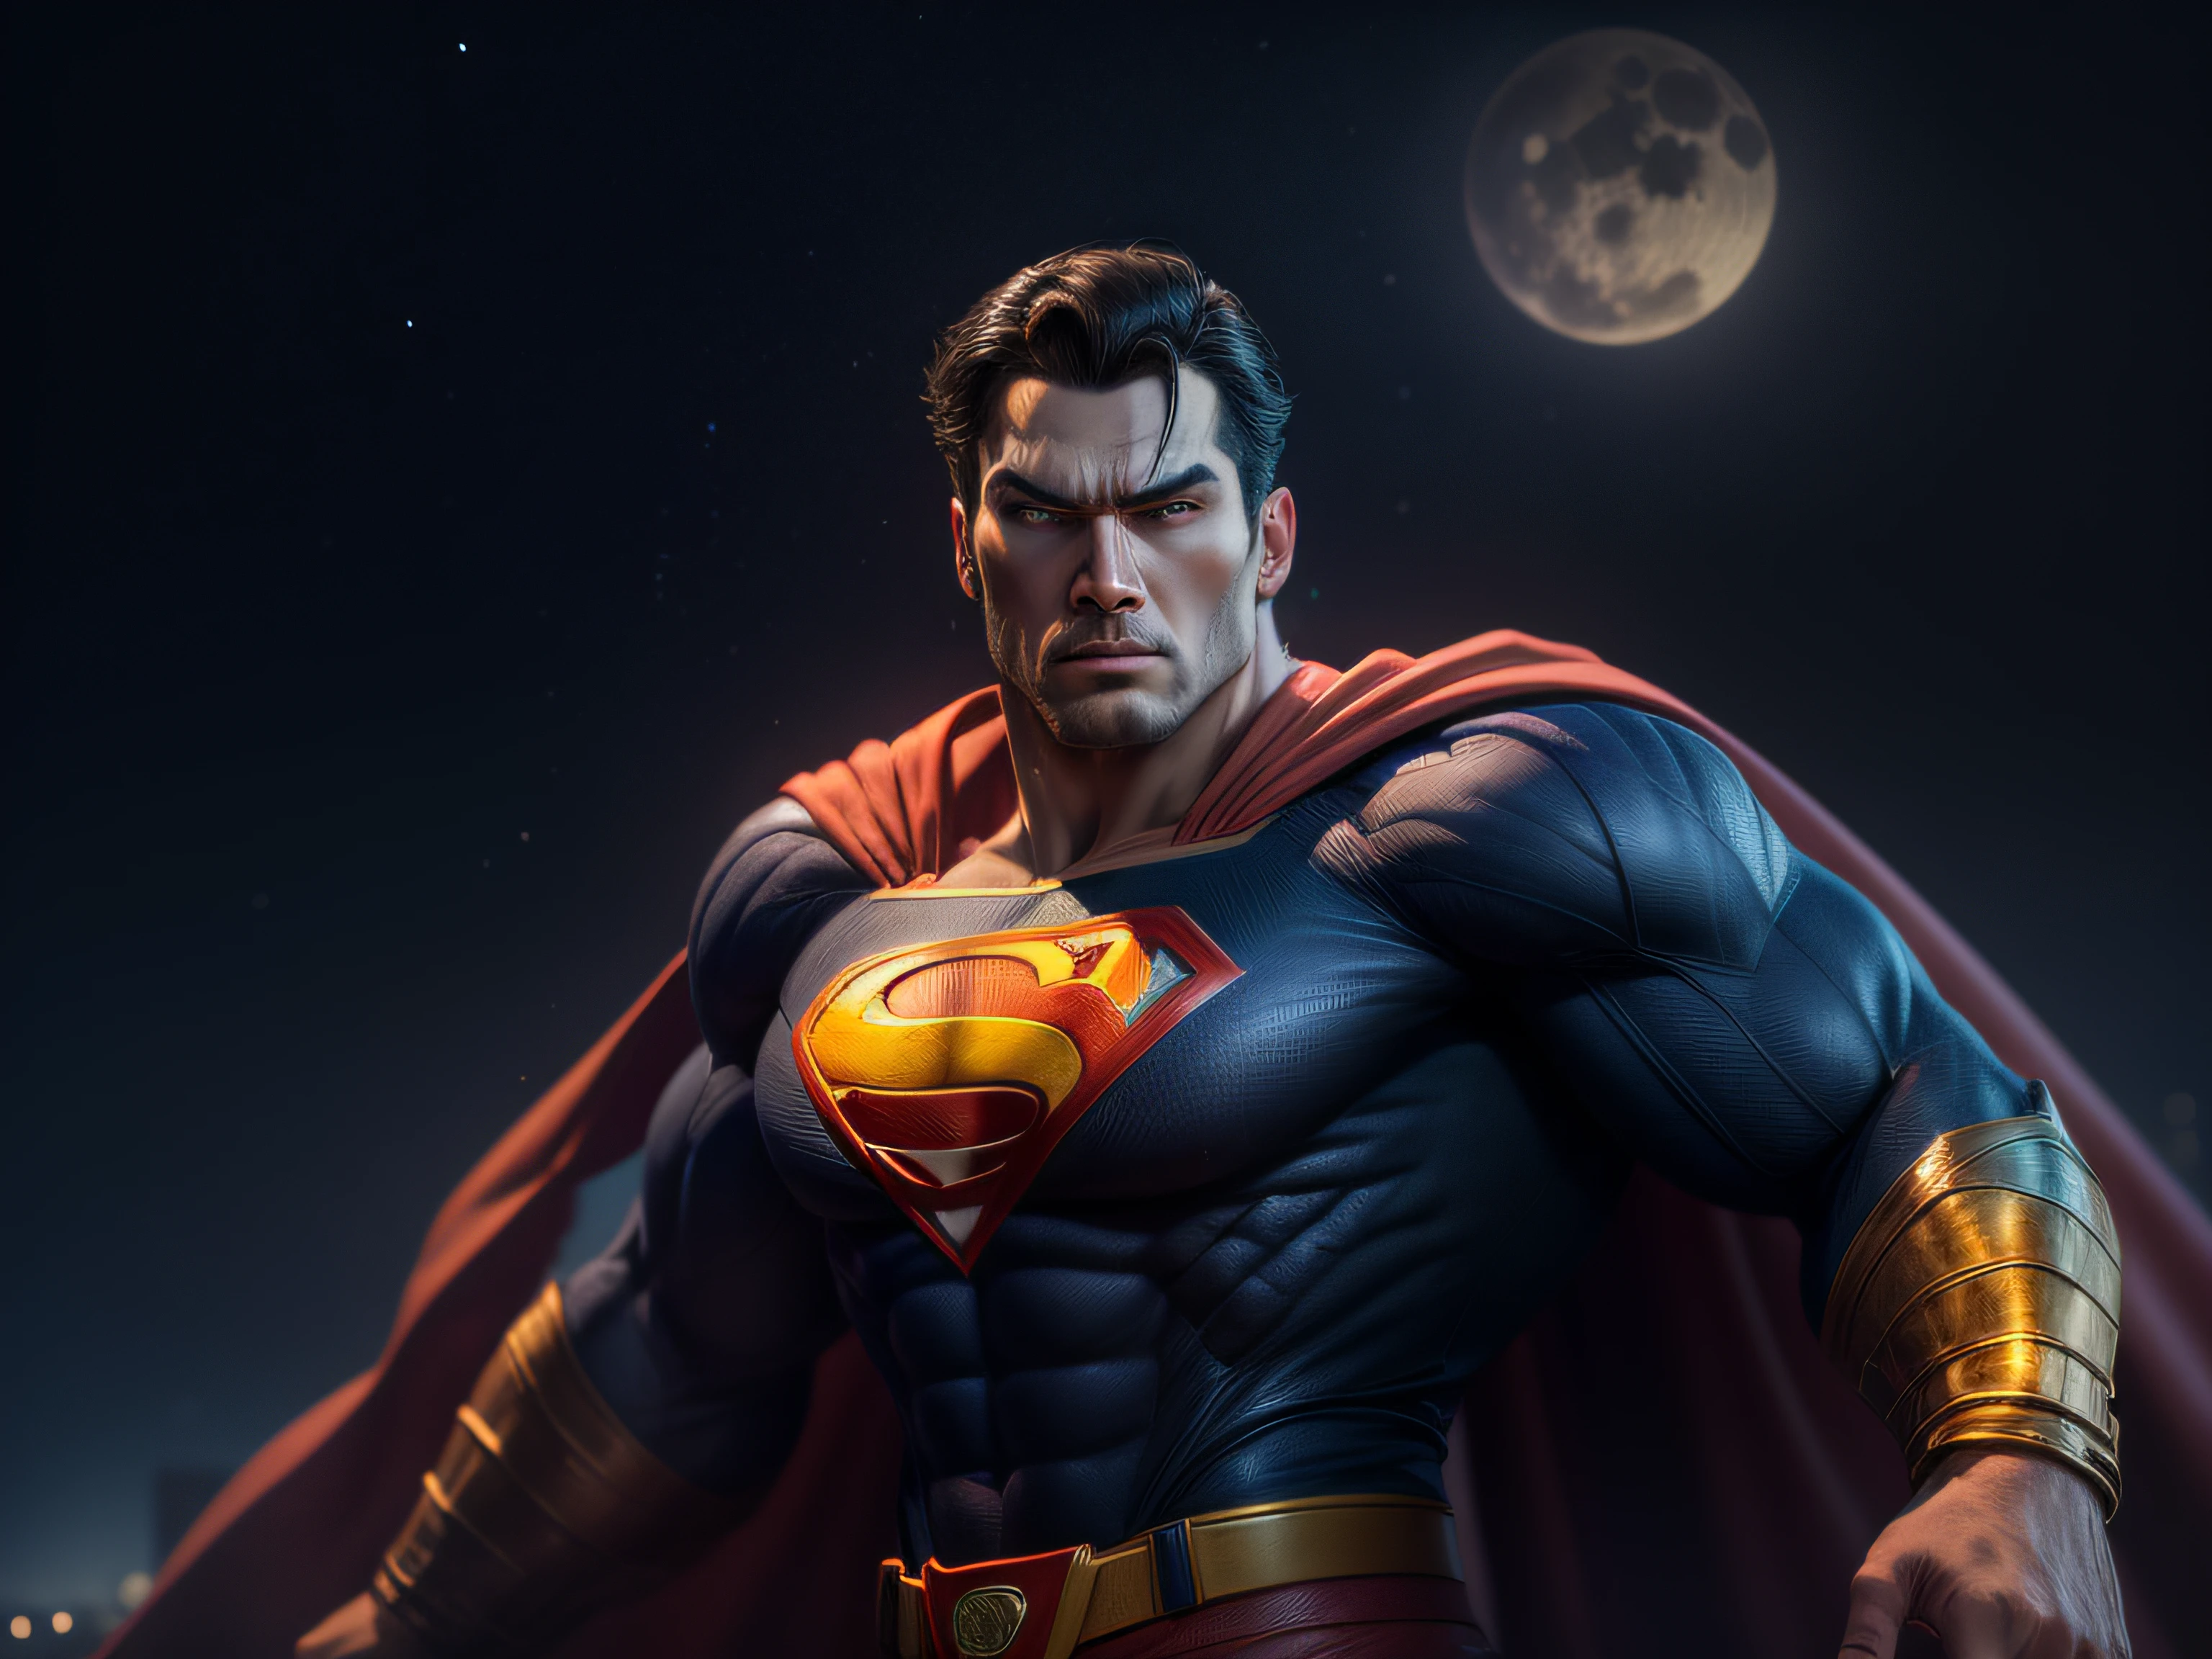 Cerrar una poderosa amenaza, La imponente apariencia del poderoso Superman vestido con uniforme naranja, mirada amenazadora, ricamente detallado, Hiper realista, renderizado 3D, obra-prima, NVIDIA, RTX, trazado de rayos, bokeh, Cielo nocturno con una enorme y hermosa luna llena., estrellas brillantes, 8k,